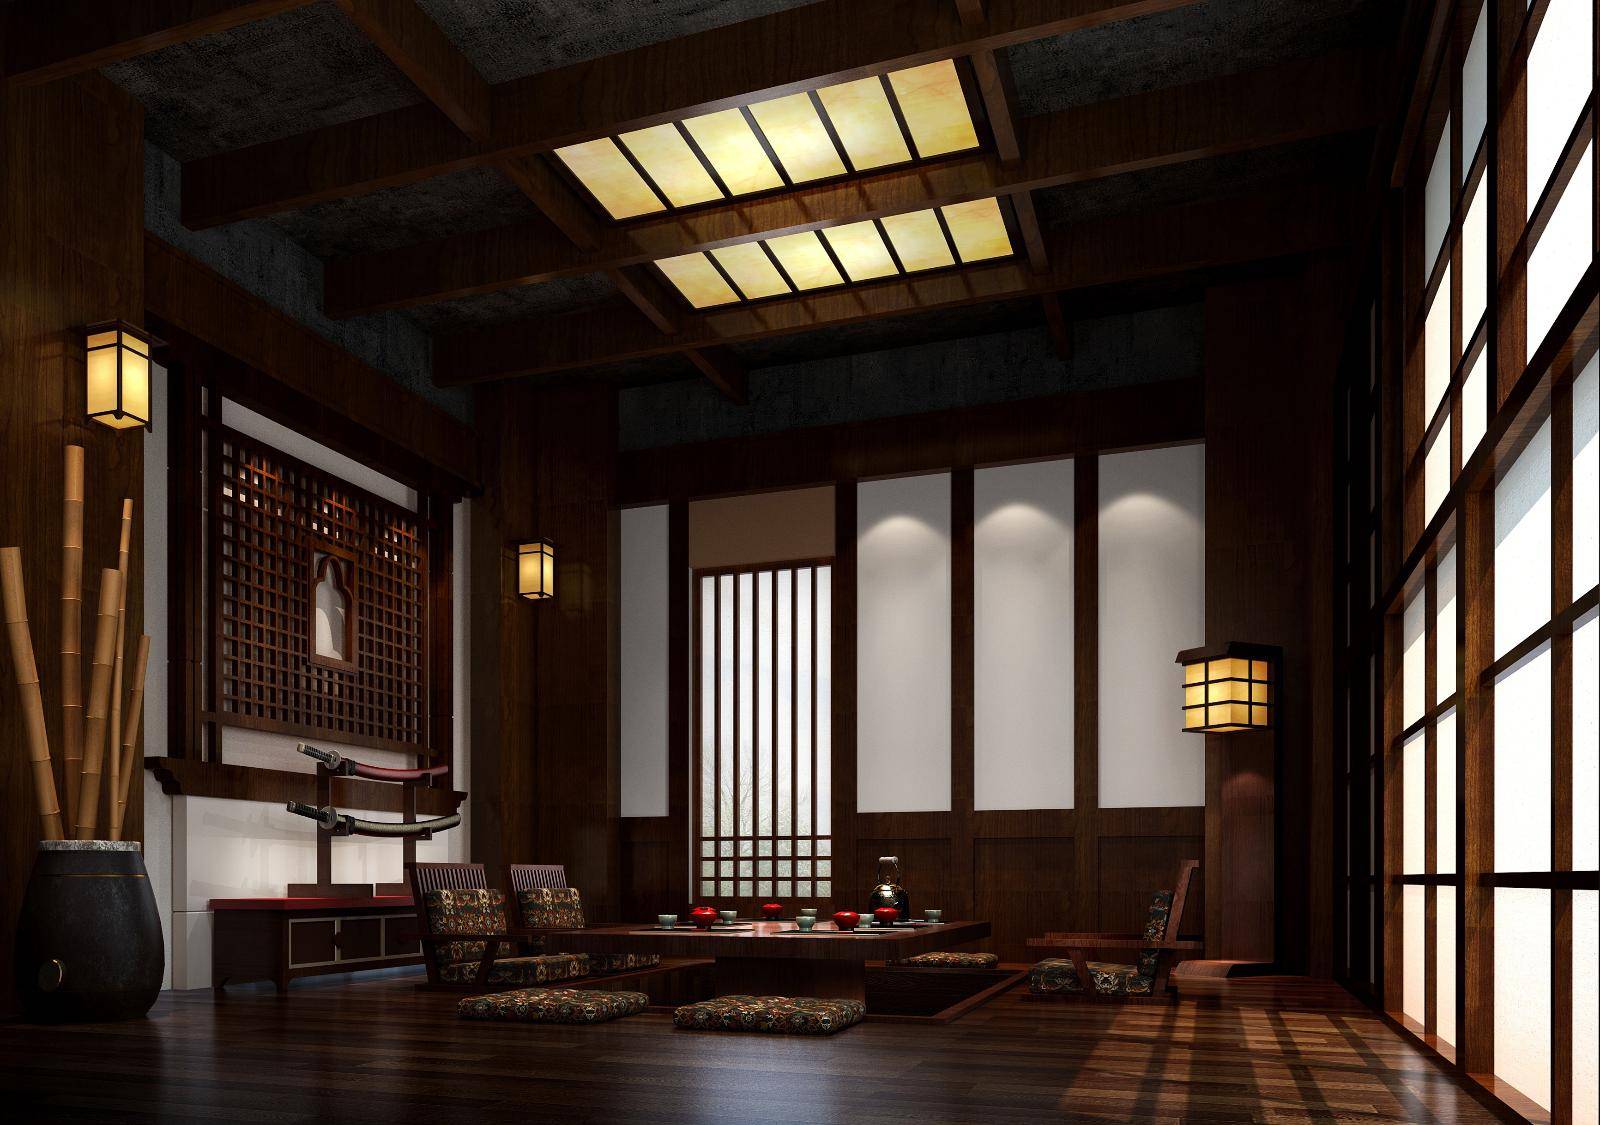 中式日式客厅装修效果展示